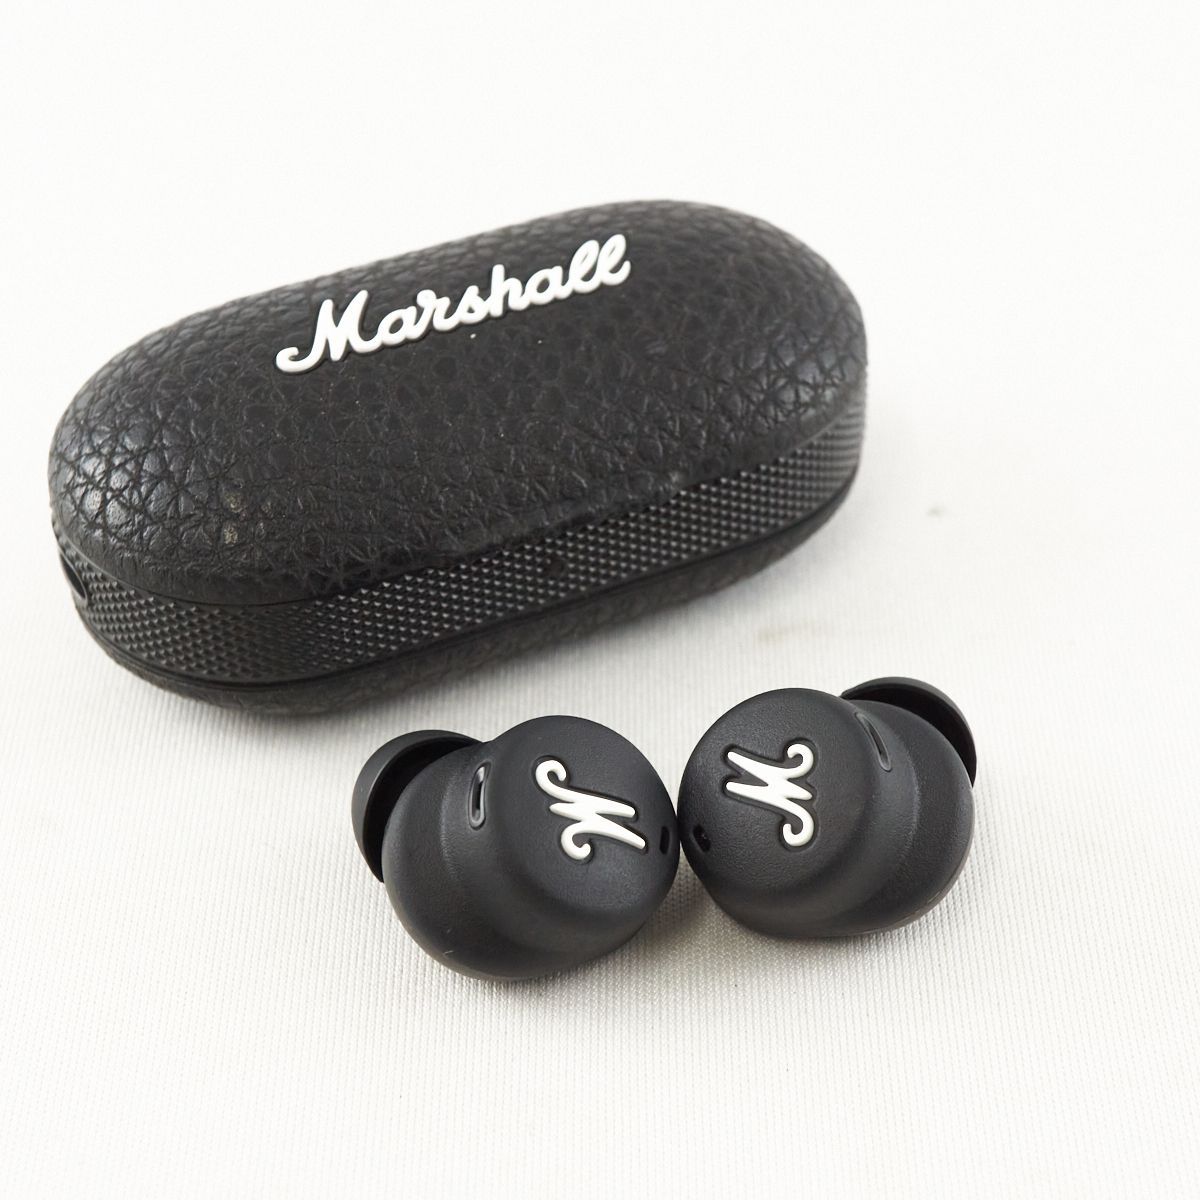 Marshall マーシャル Mode II ワイヤレスイヤホン USED美品 Bluetooth